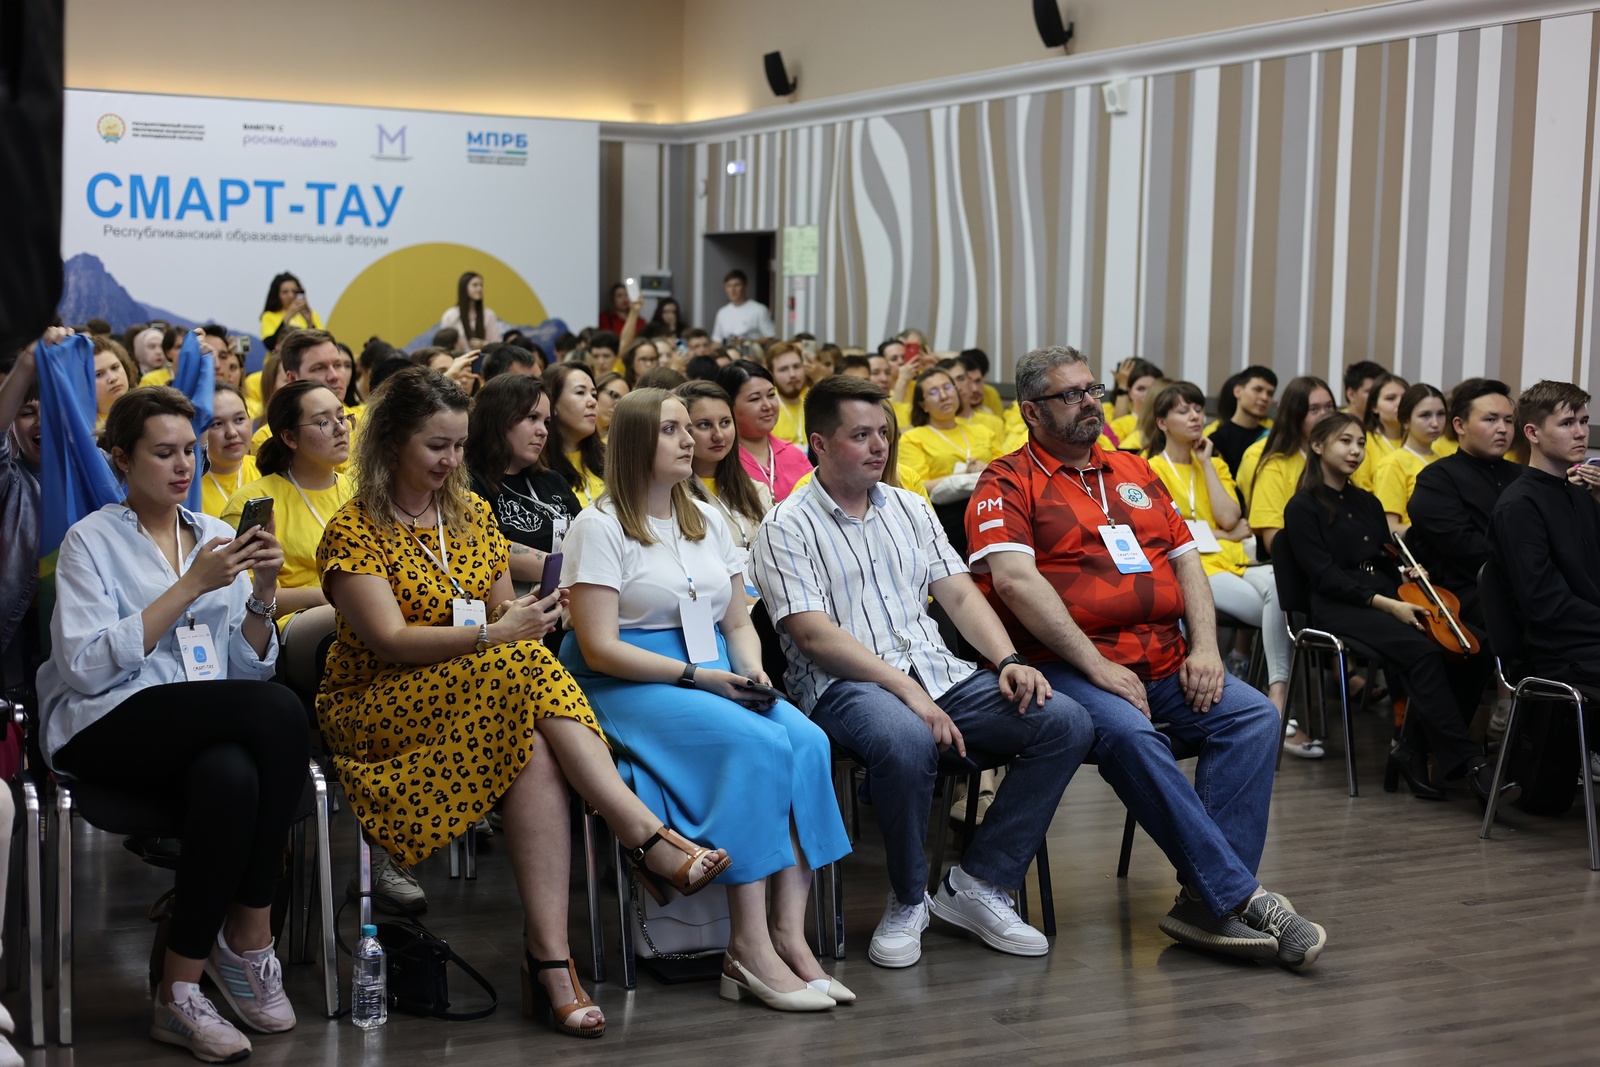 Более 100 готовых проектов молодёжи Башкортостана появятся по итогам регионального форума «Смарт-тау»